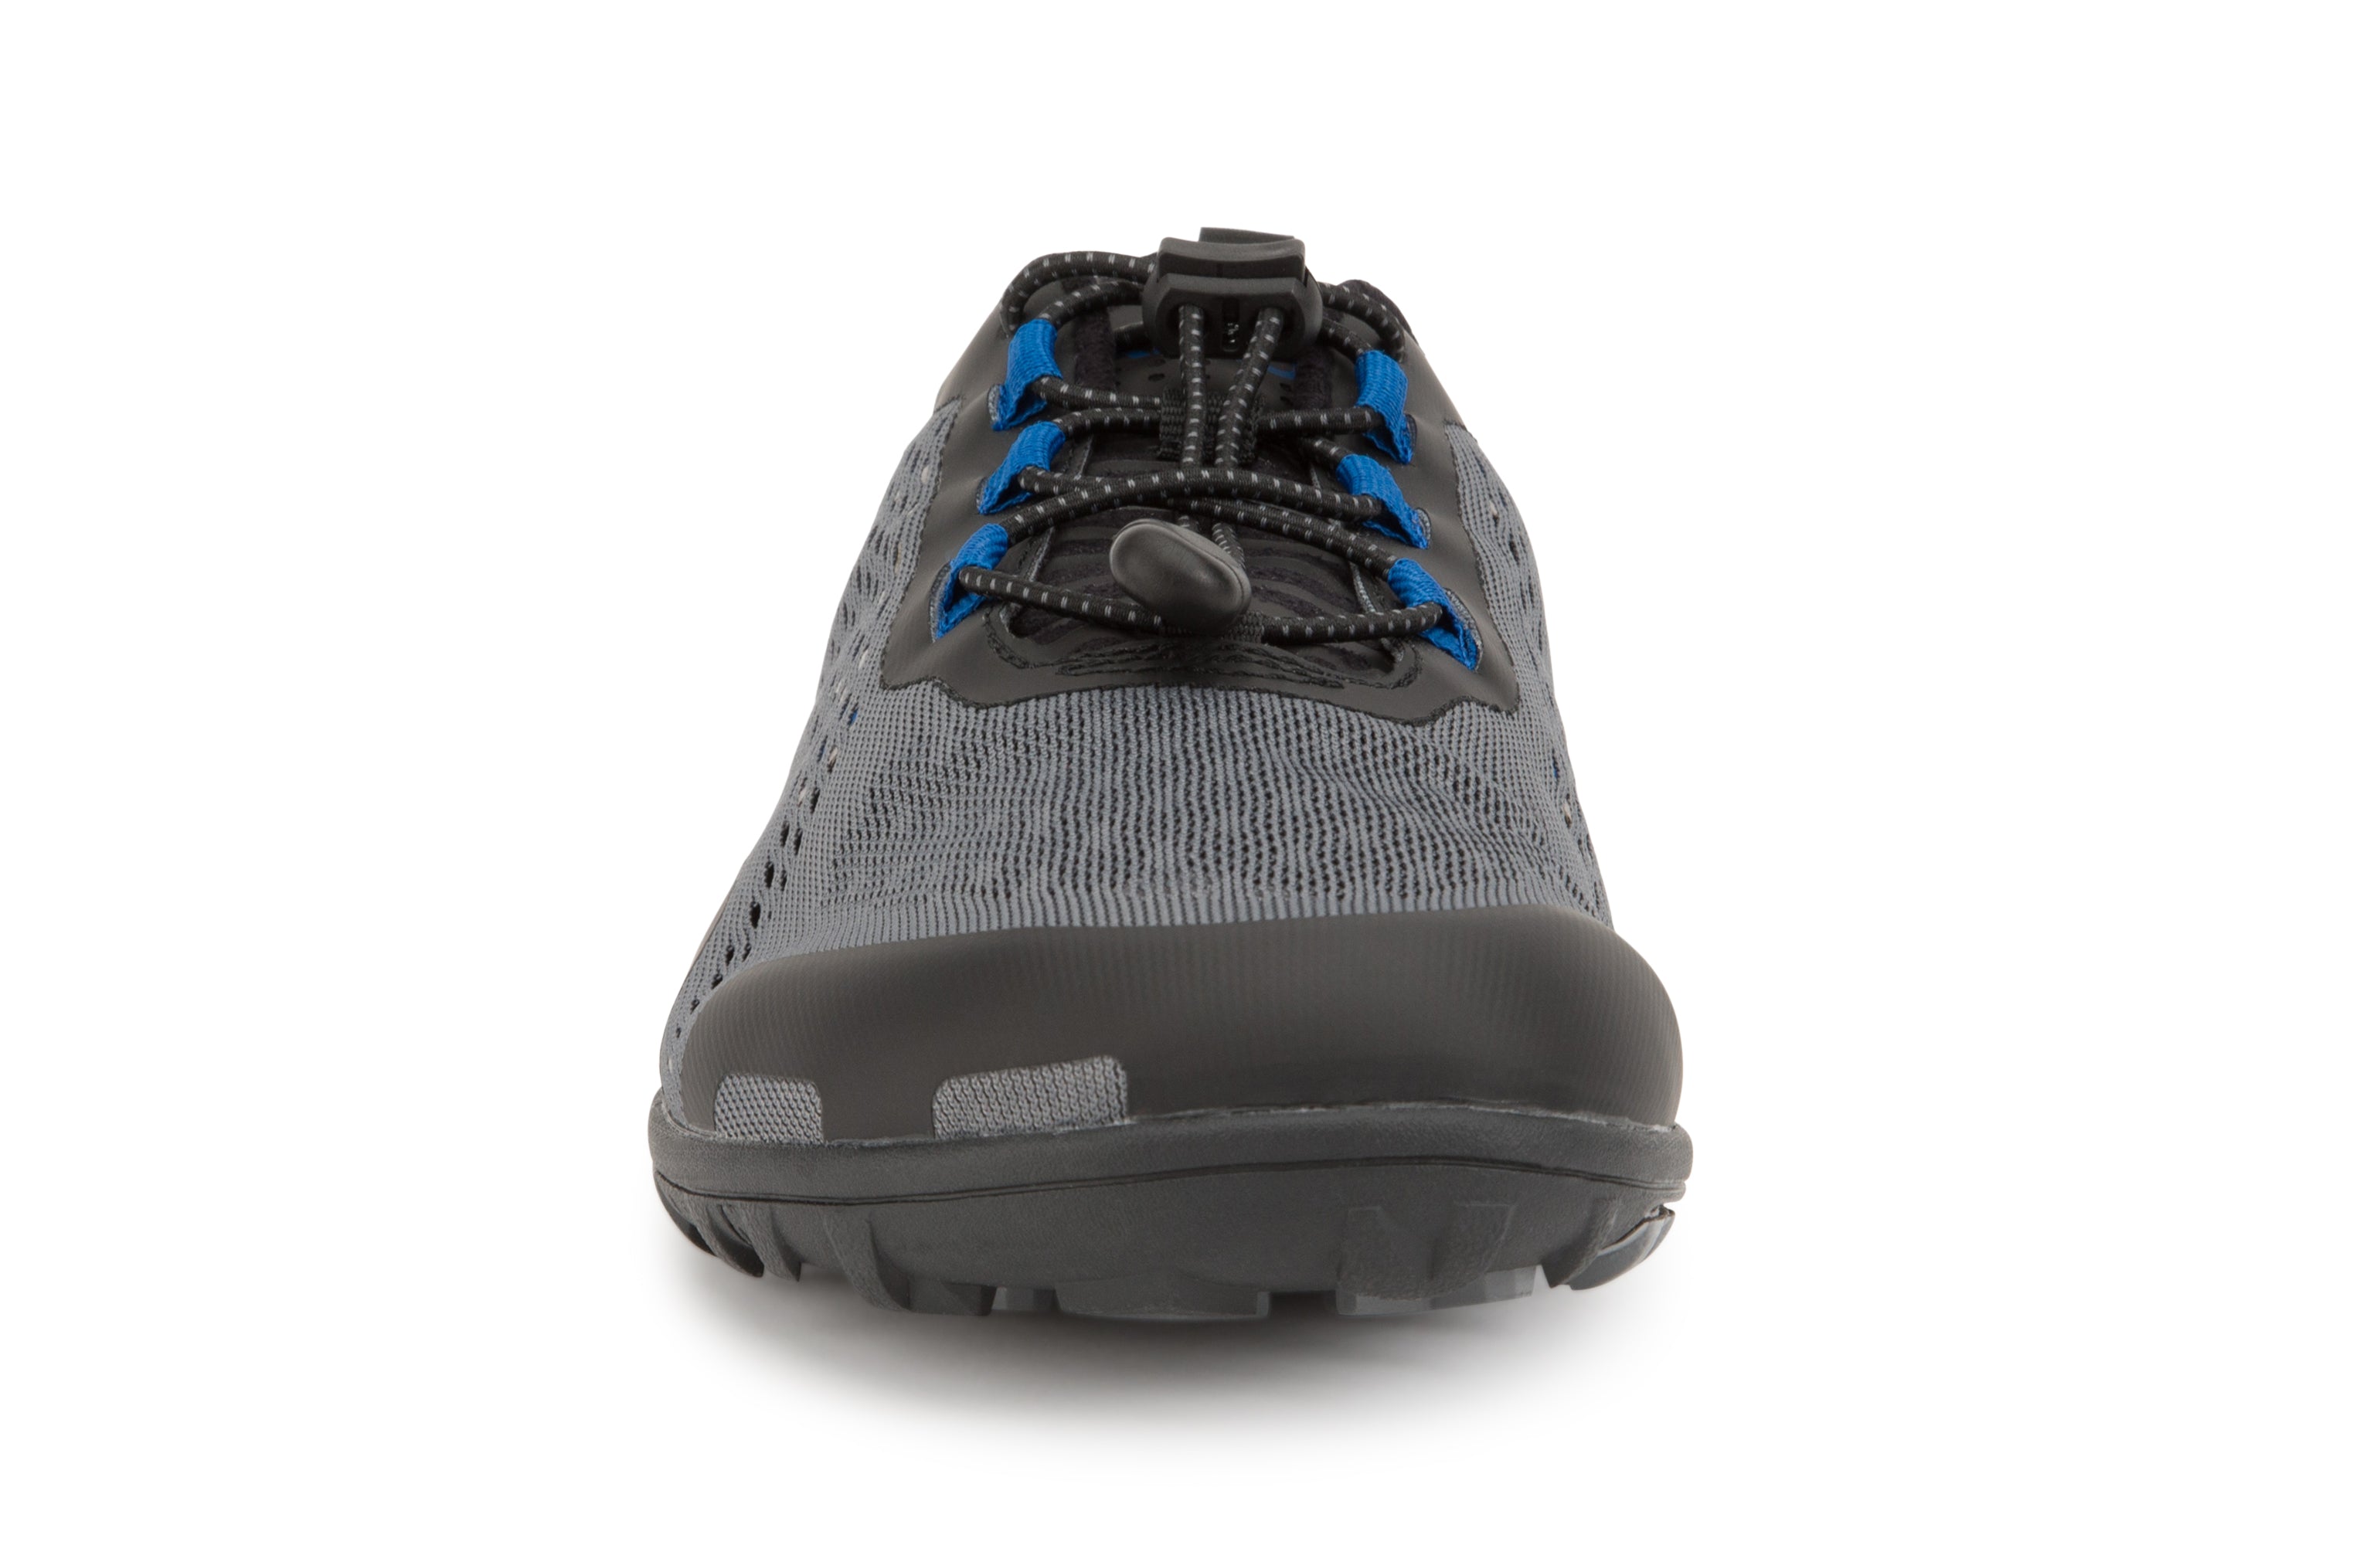 Xero Shoes Aqua X Sport barfods vand træningssko til mænd i farven steel gray / blue, forfra